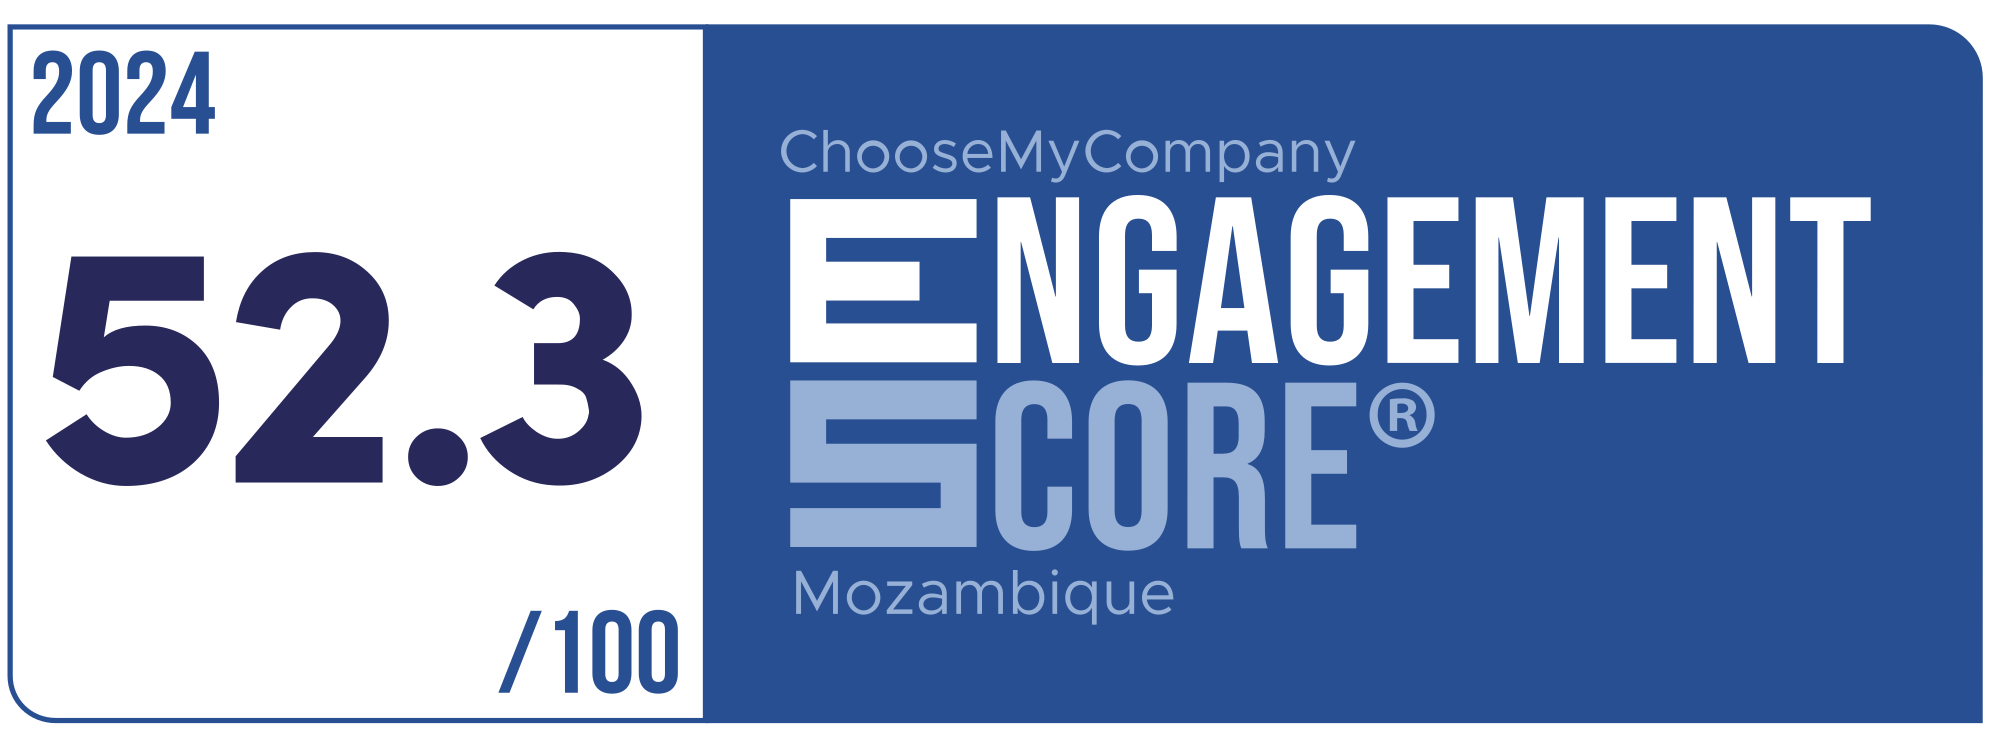 Label Engagement Score 2024 Mozambique